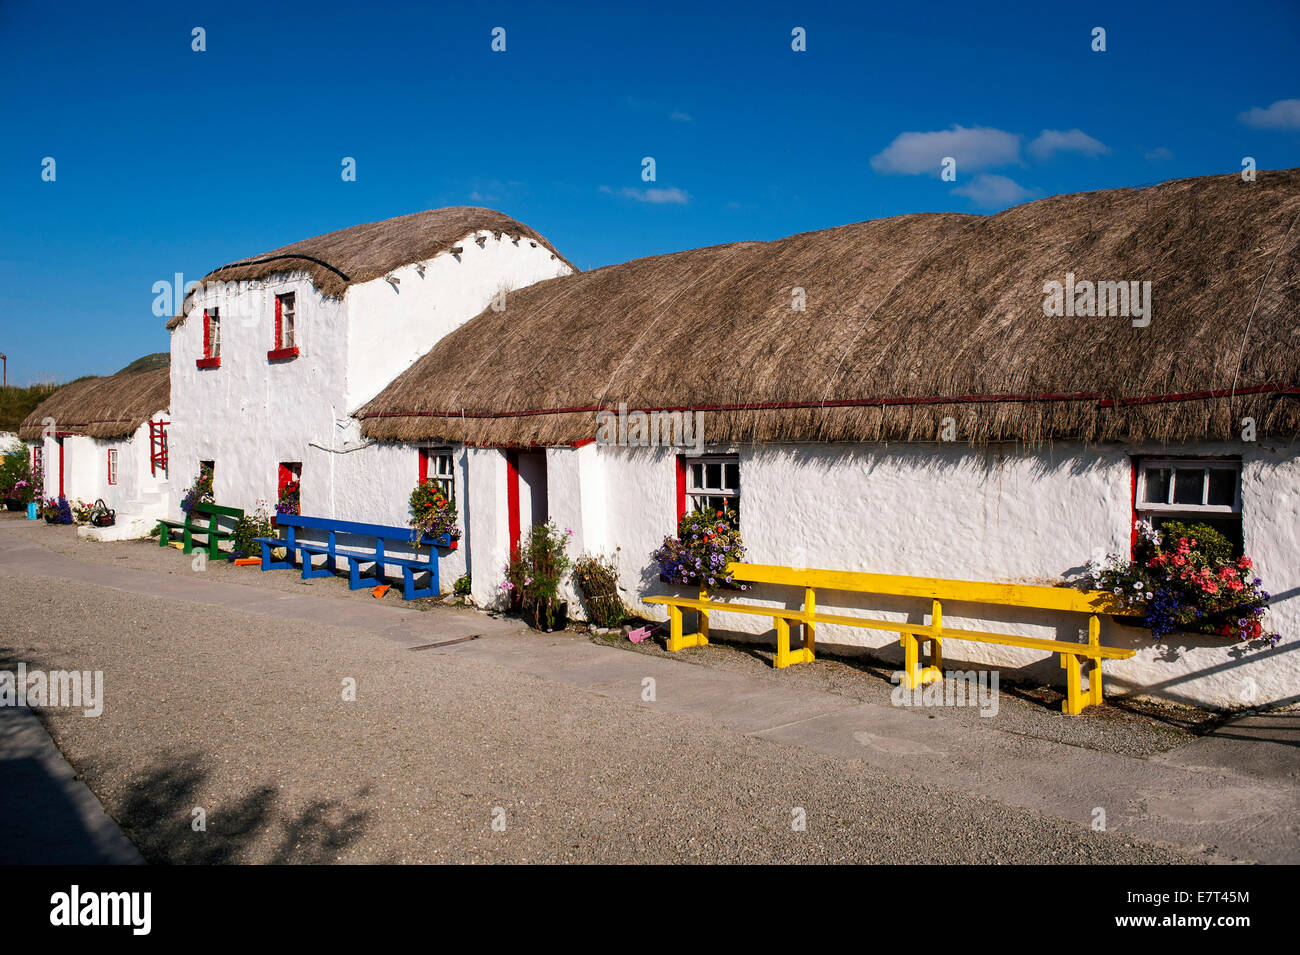 Toit de chaume traditionnel irlandais du 19ème siècle chambres d'hôtes au Village de la famine, à l'île de Doagh, comté de Donegal, Irlande Banque D'Images